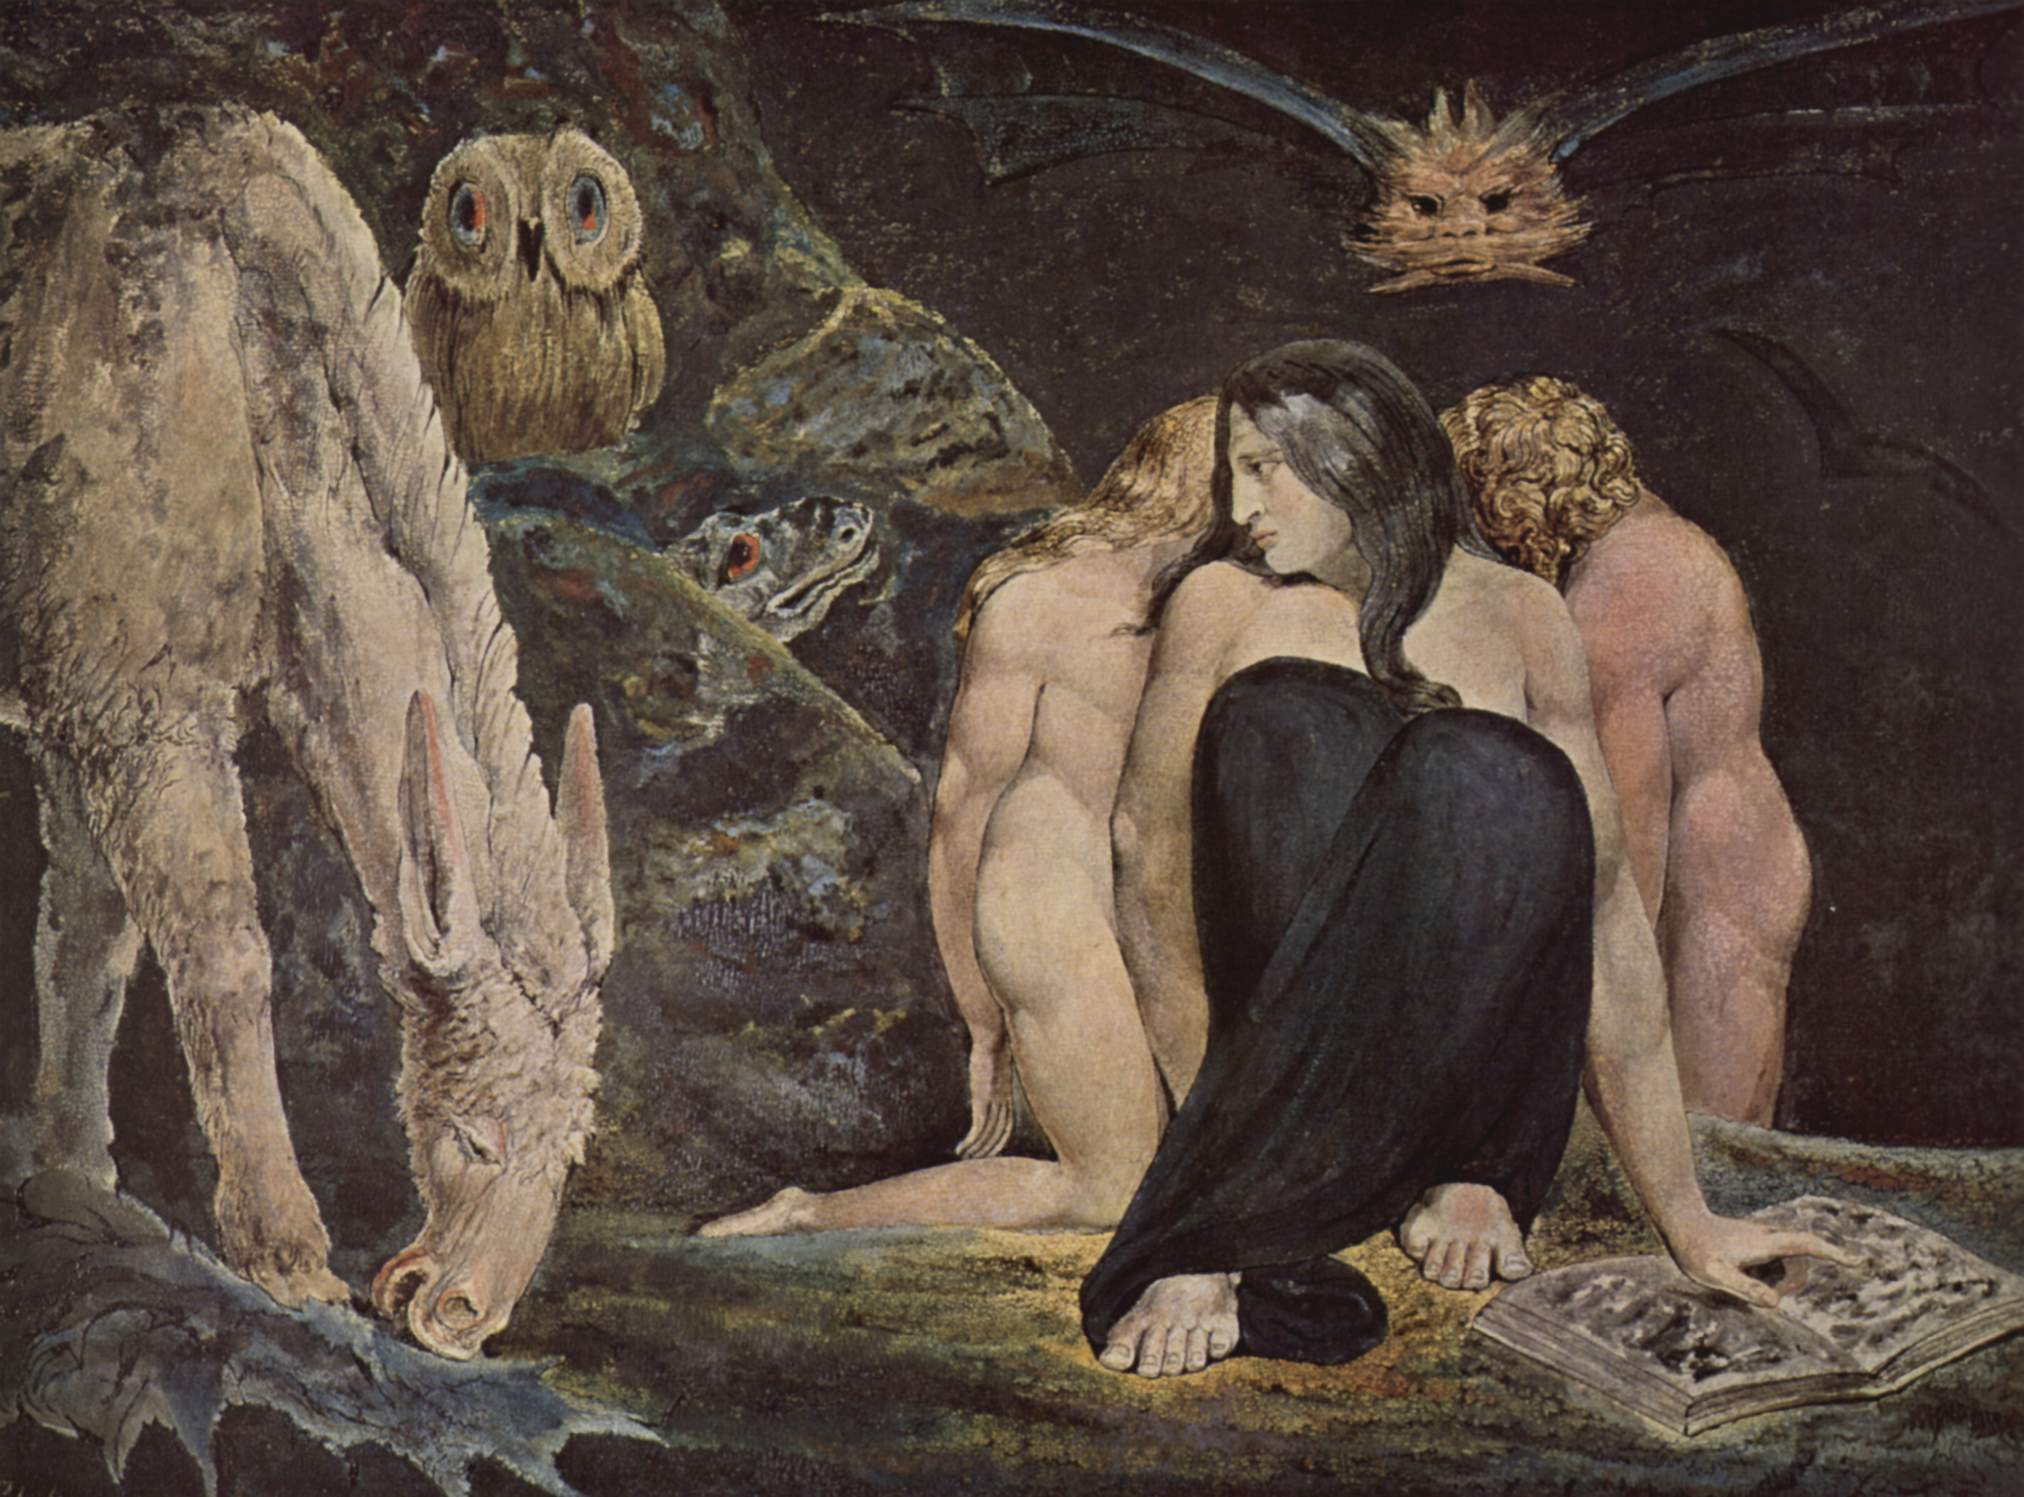 William_Blake. The Night of Enitharmon's Joy, 1795. Blake's.